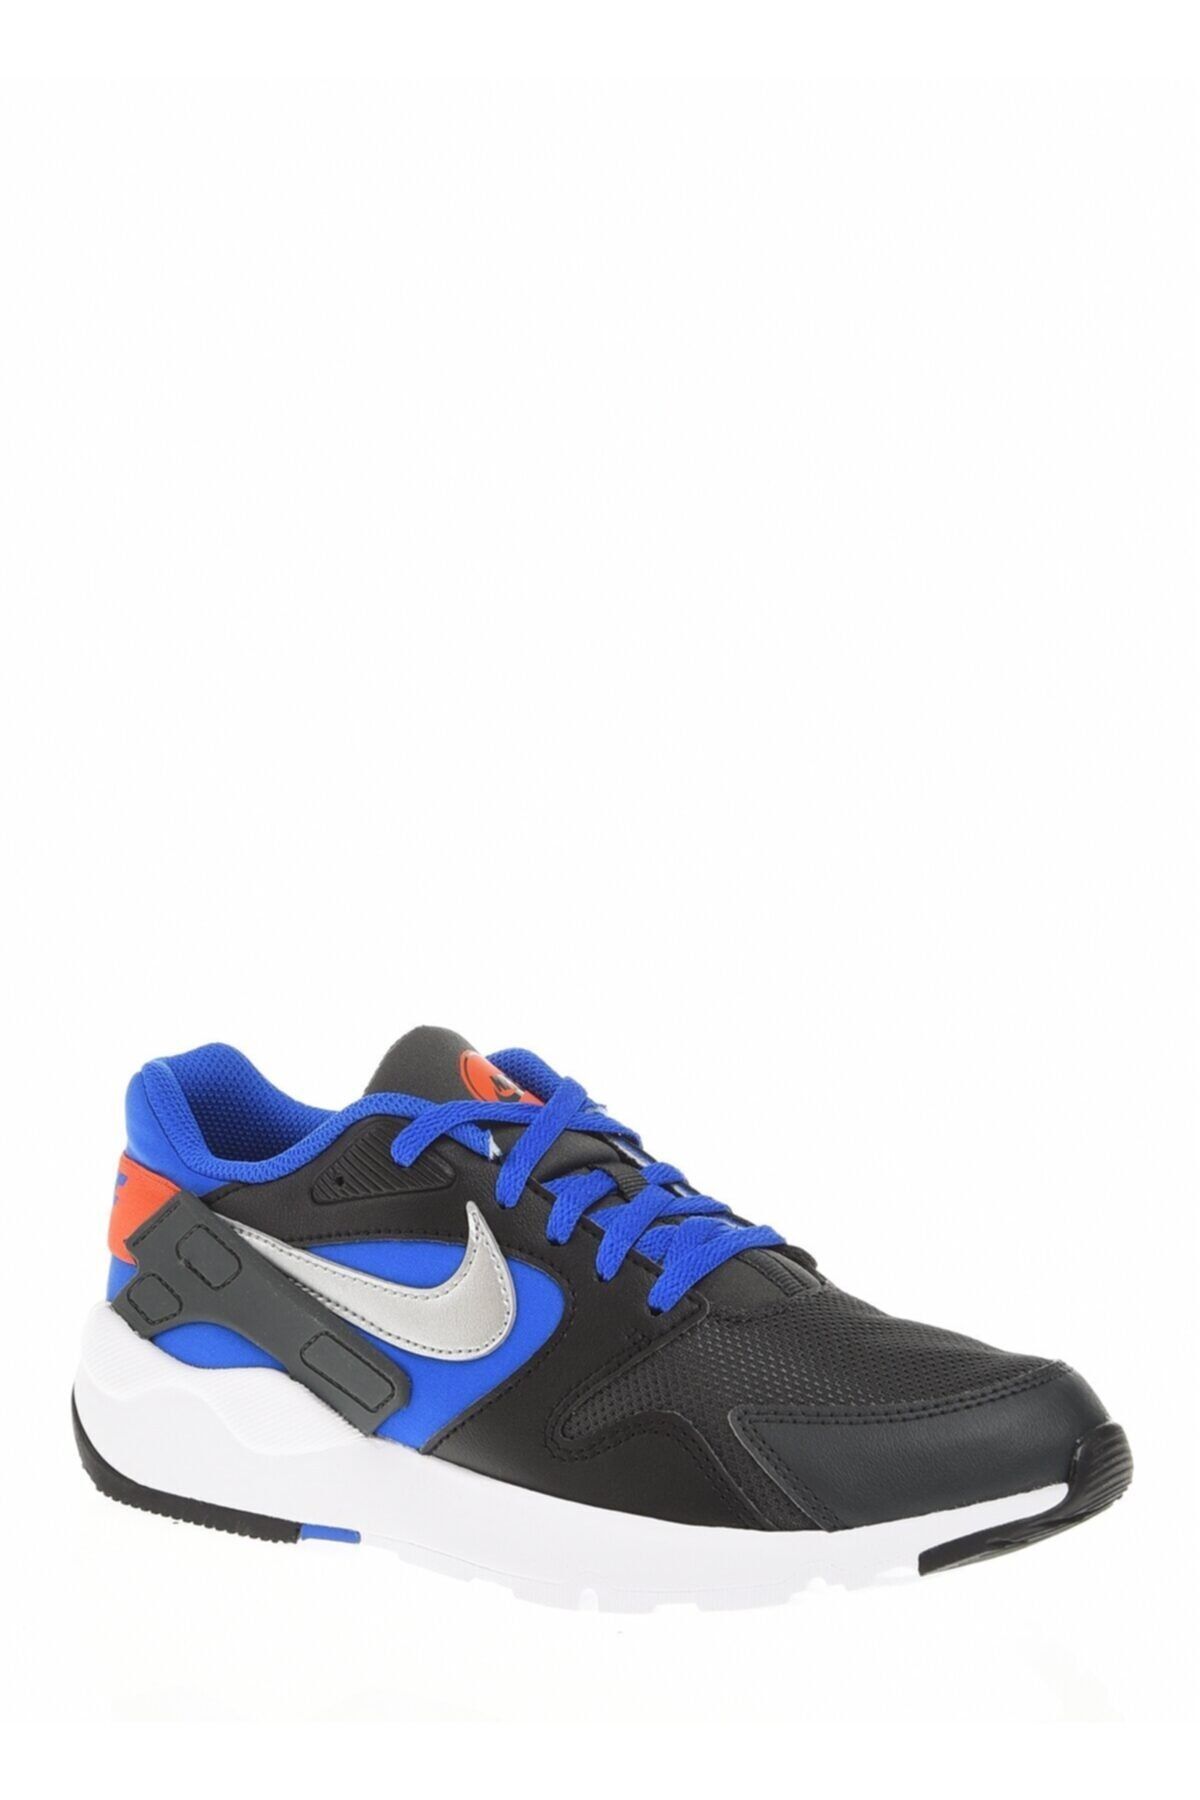 Nike Ld Victory (gs) - Günlük Spor Ayakkabı - At5604-005